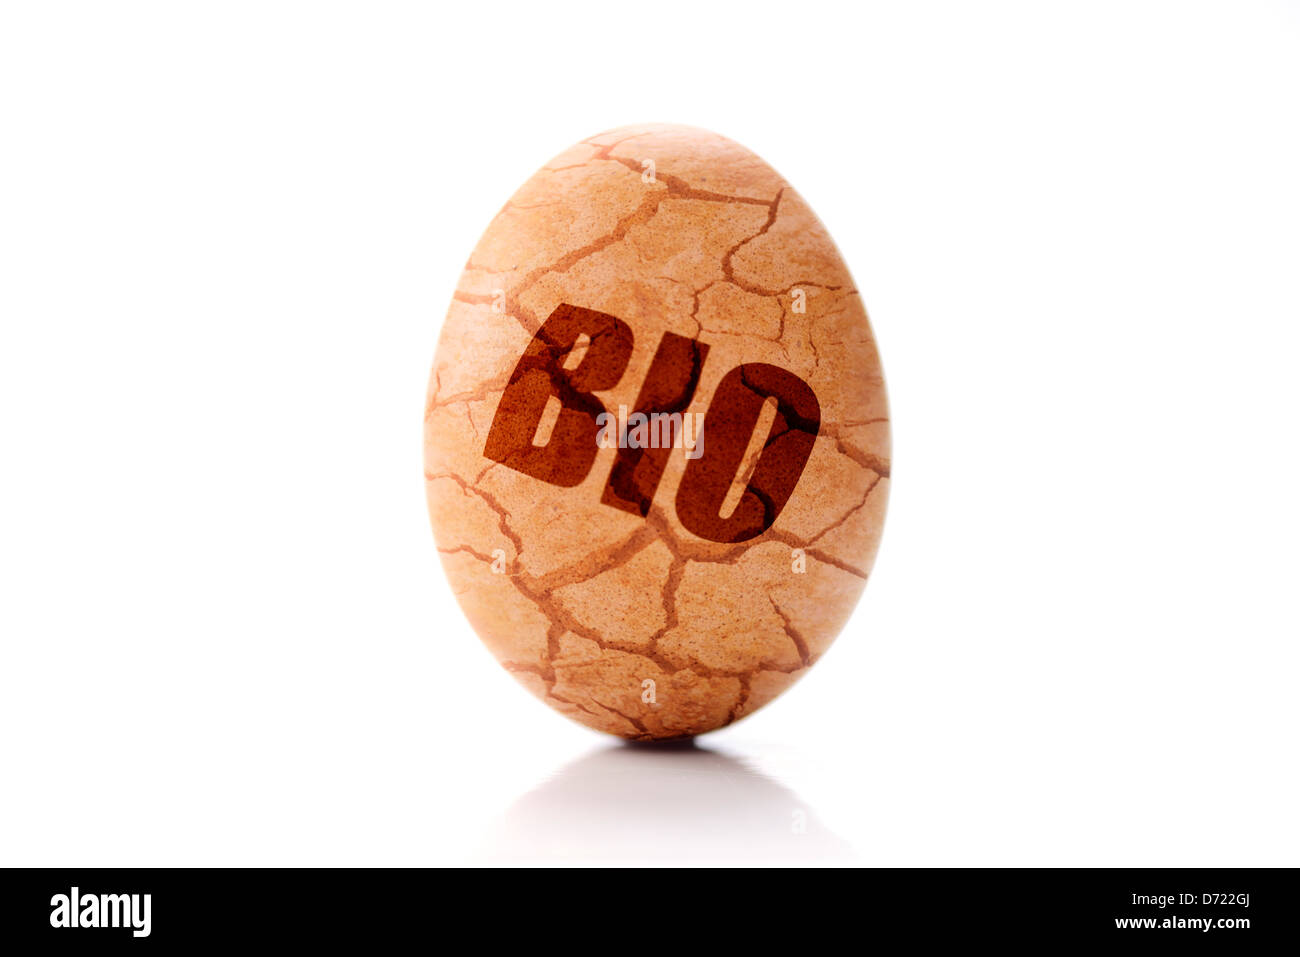 Huevo con bio-label y lágrimas, mal etiquetados biología huevos Foto de stock